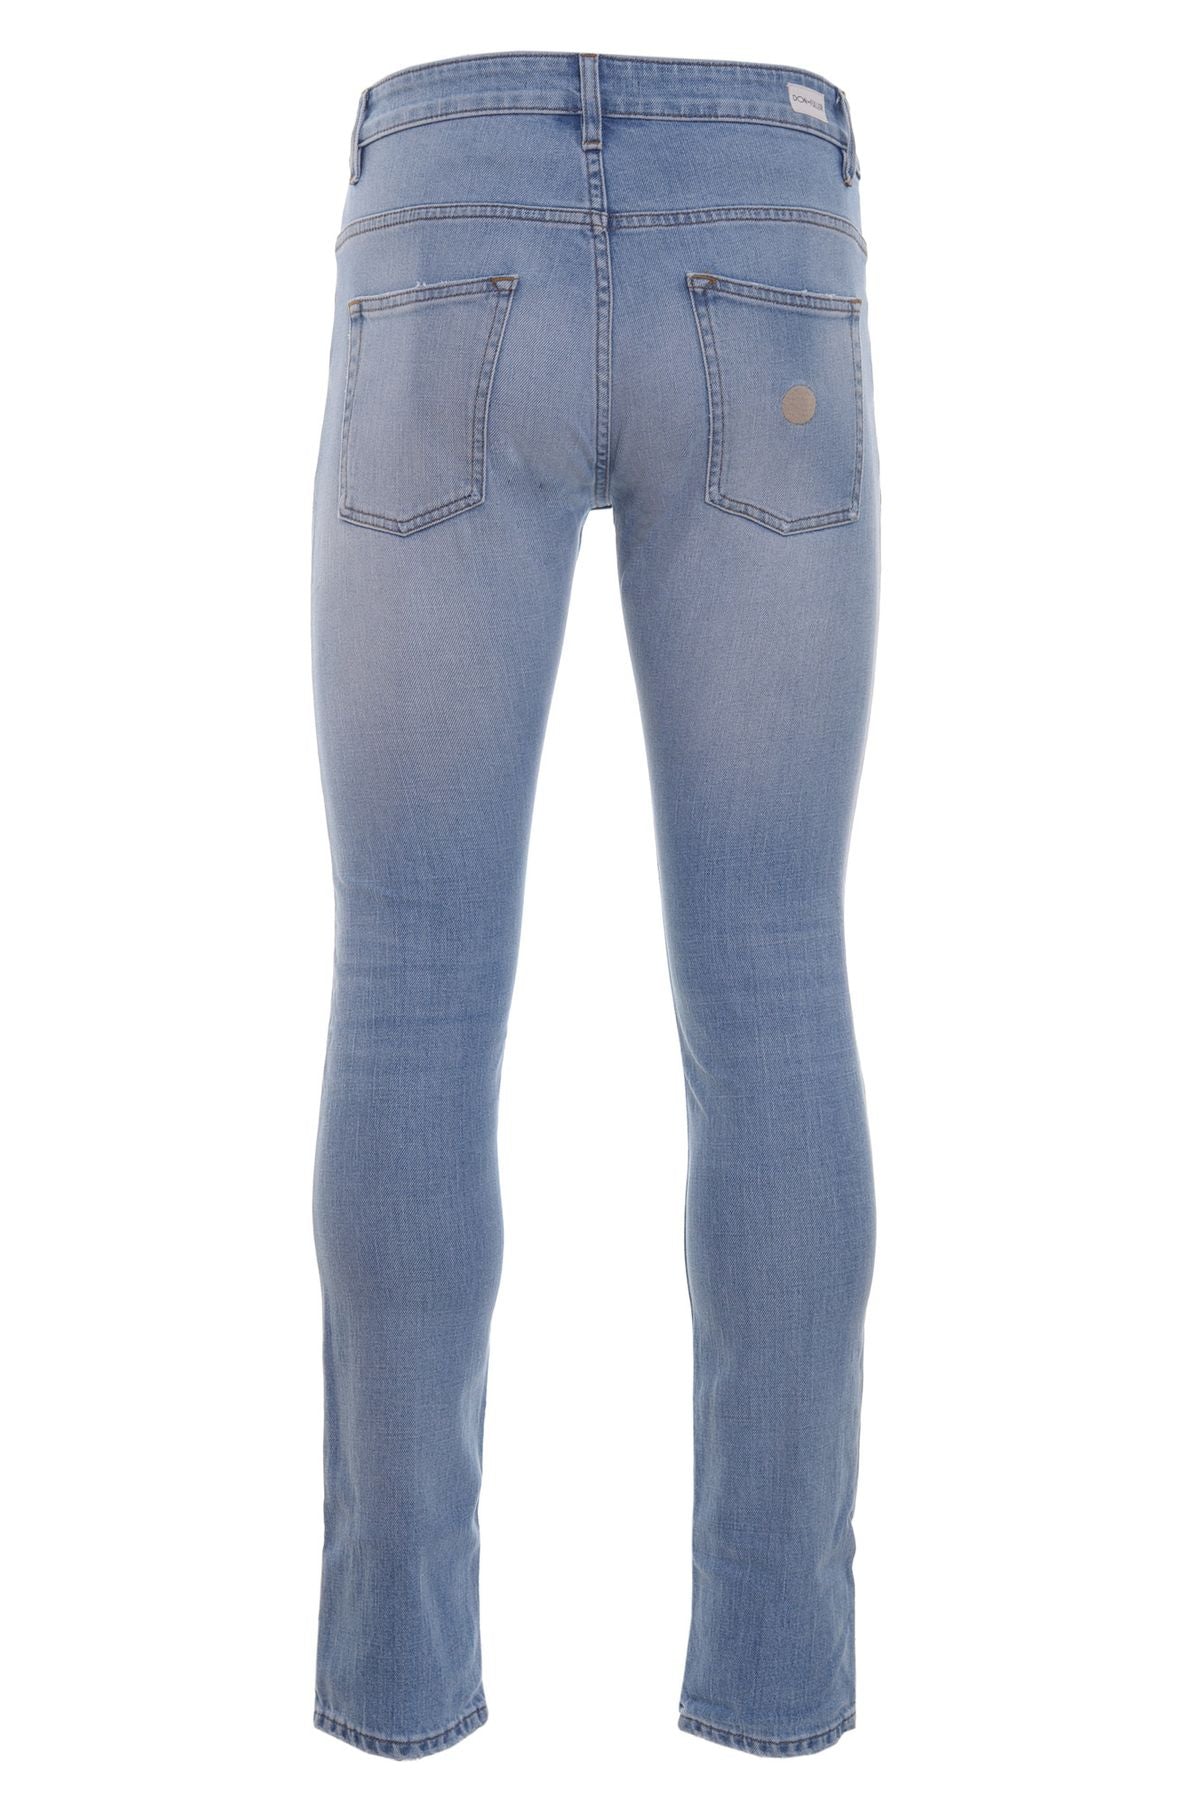 DONTHEFULLER Jeans Primavera/Estate